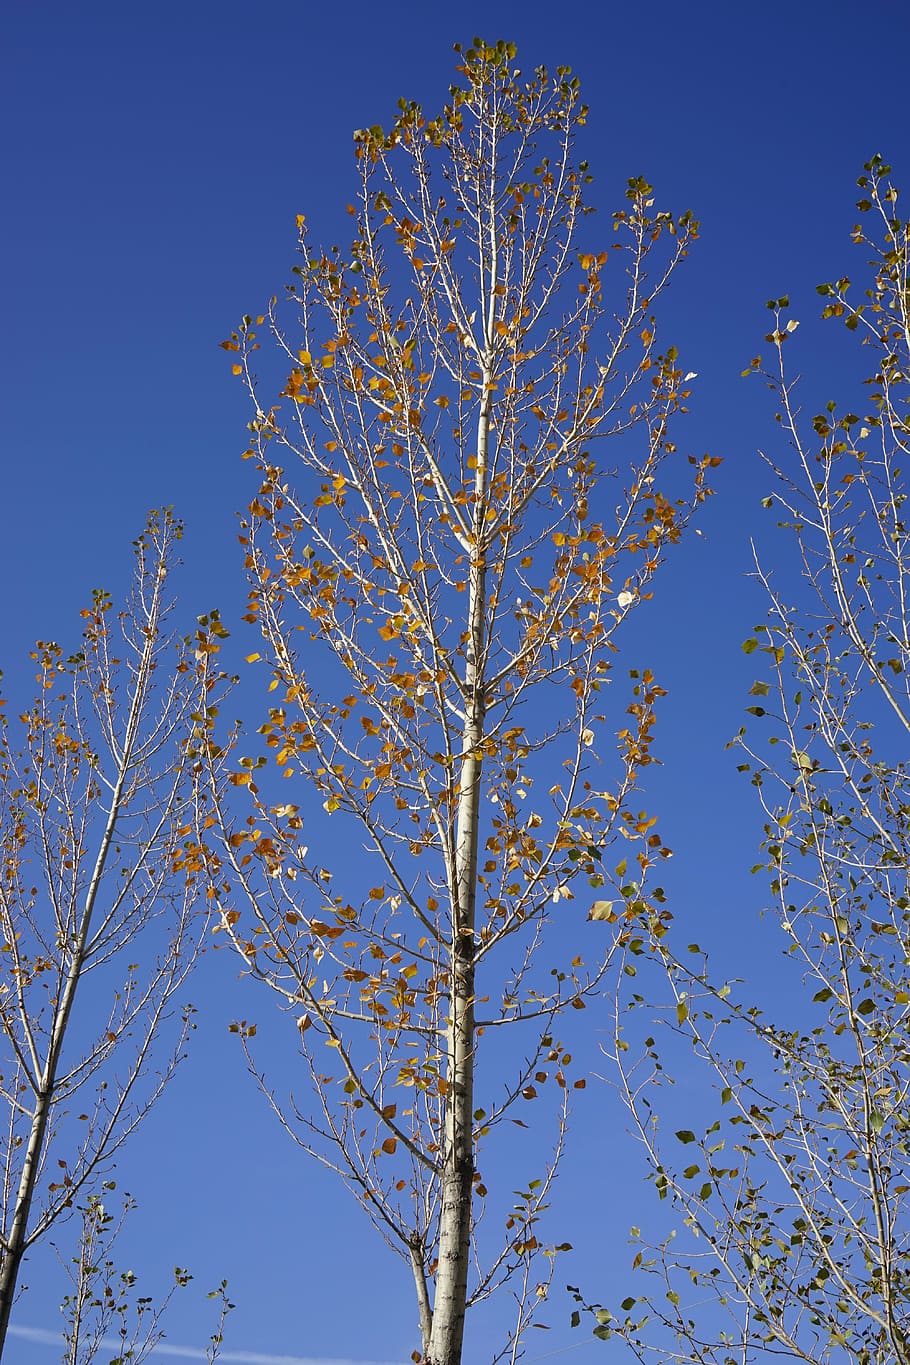 Zhangye, White Birch, Autumn, Sky, Blue, Low Angle - Plane-tree Family - HD Wallpaper 